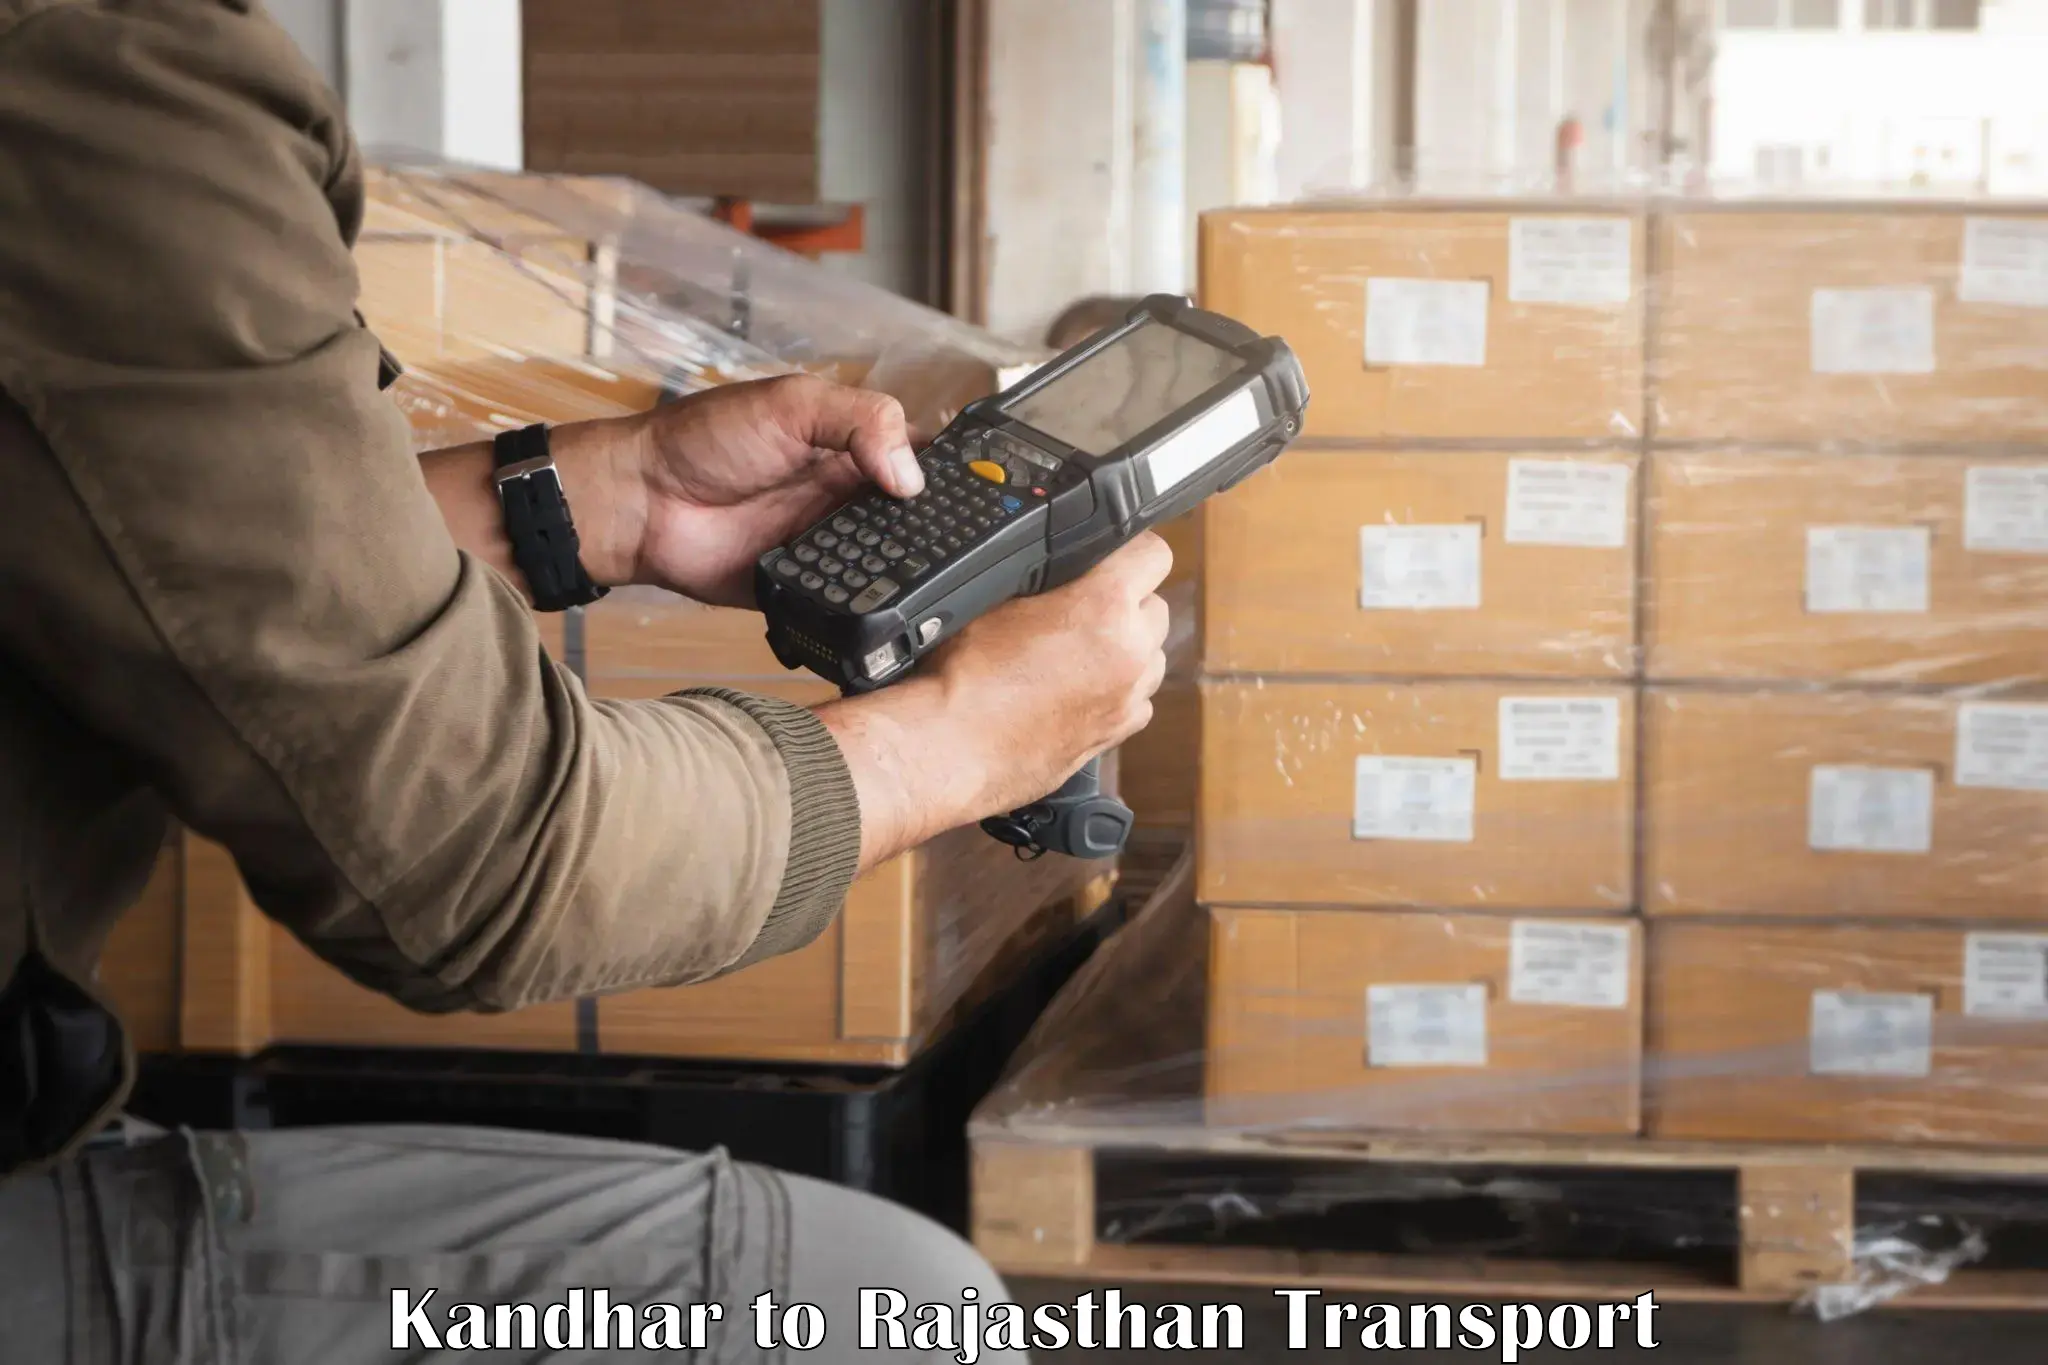 Daily transport service Kandhar to Bhiwadi